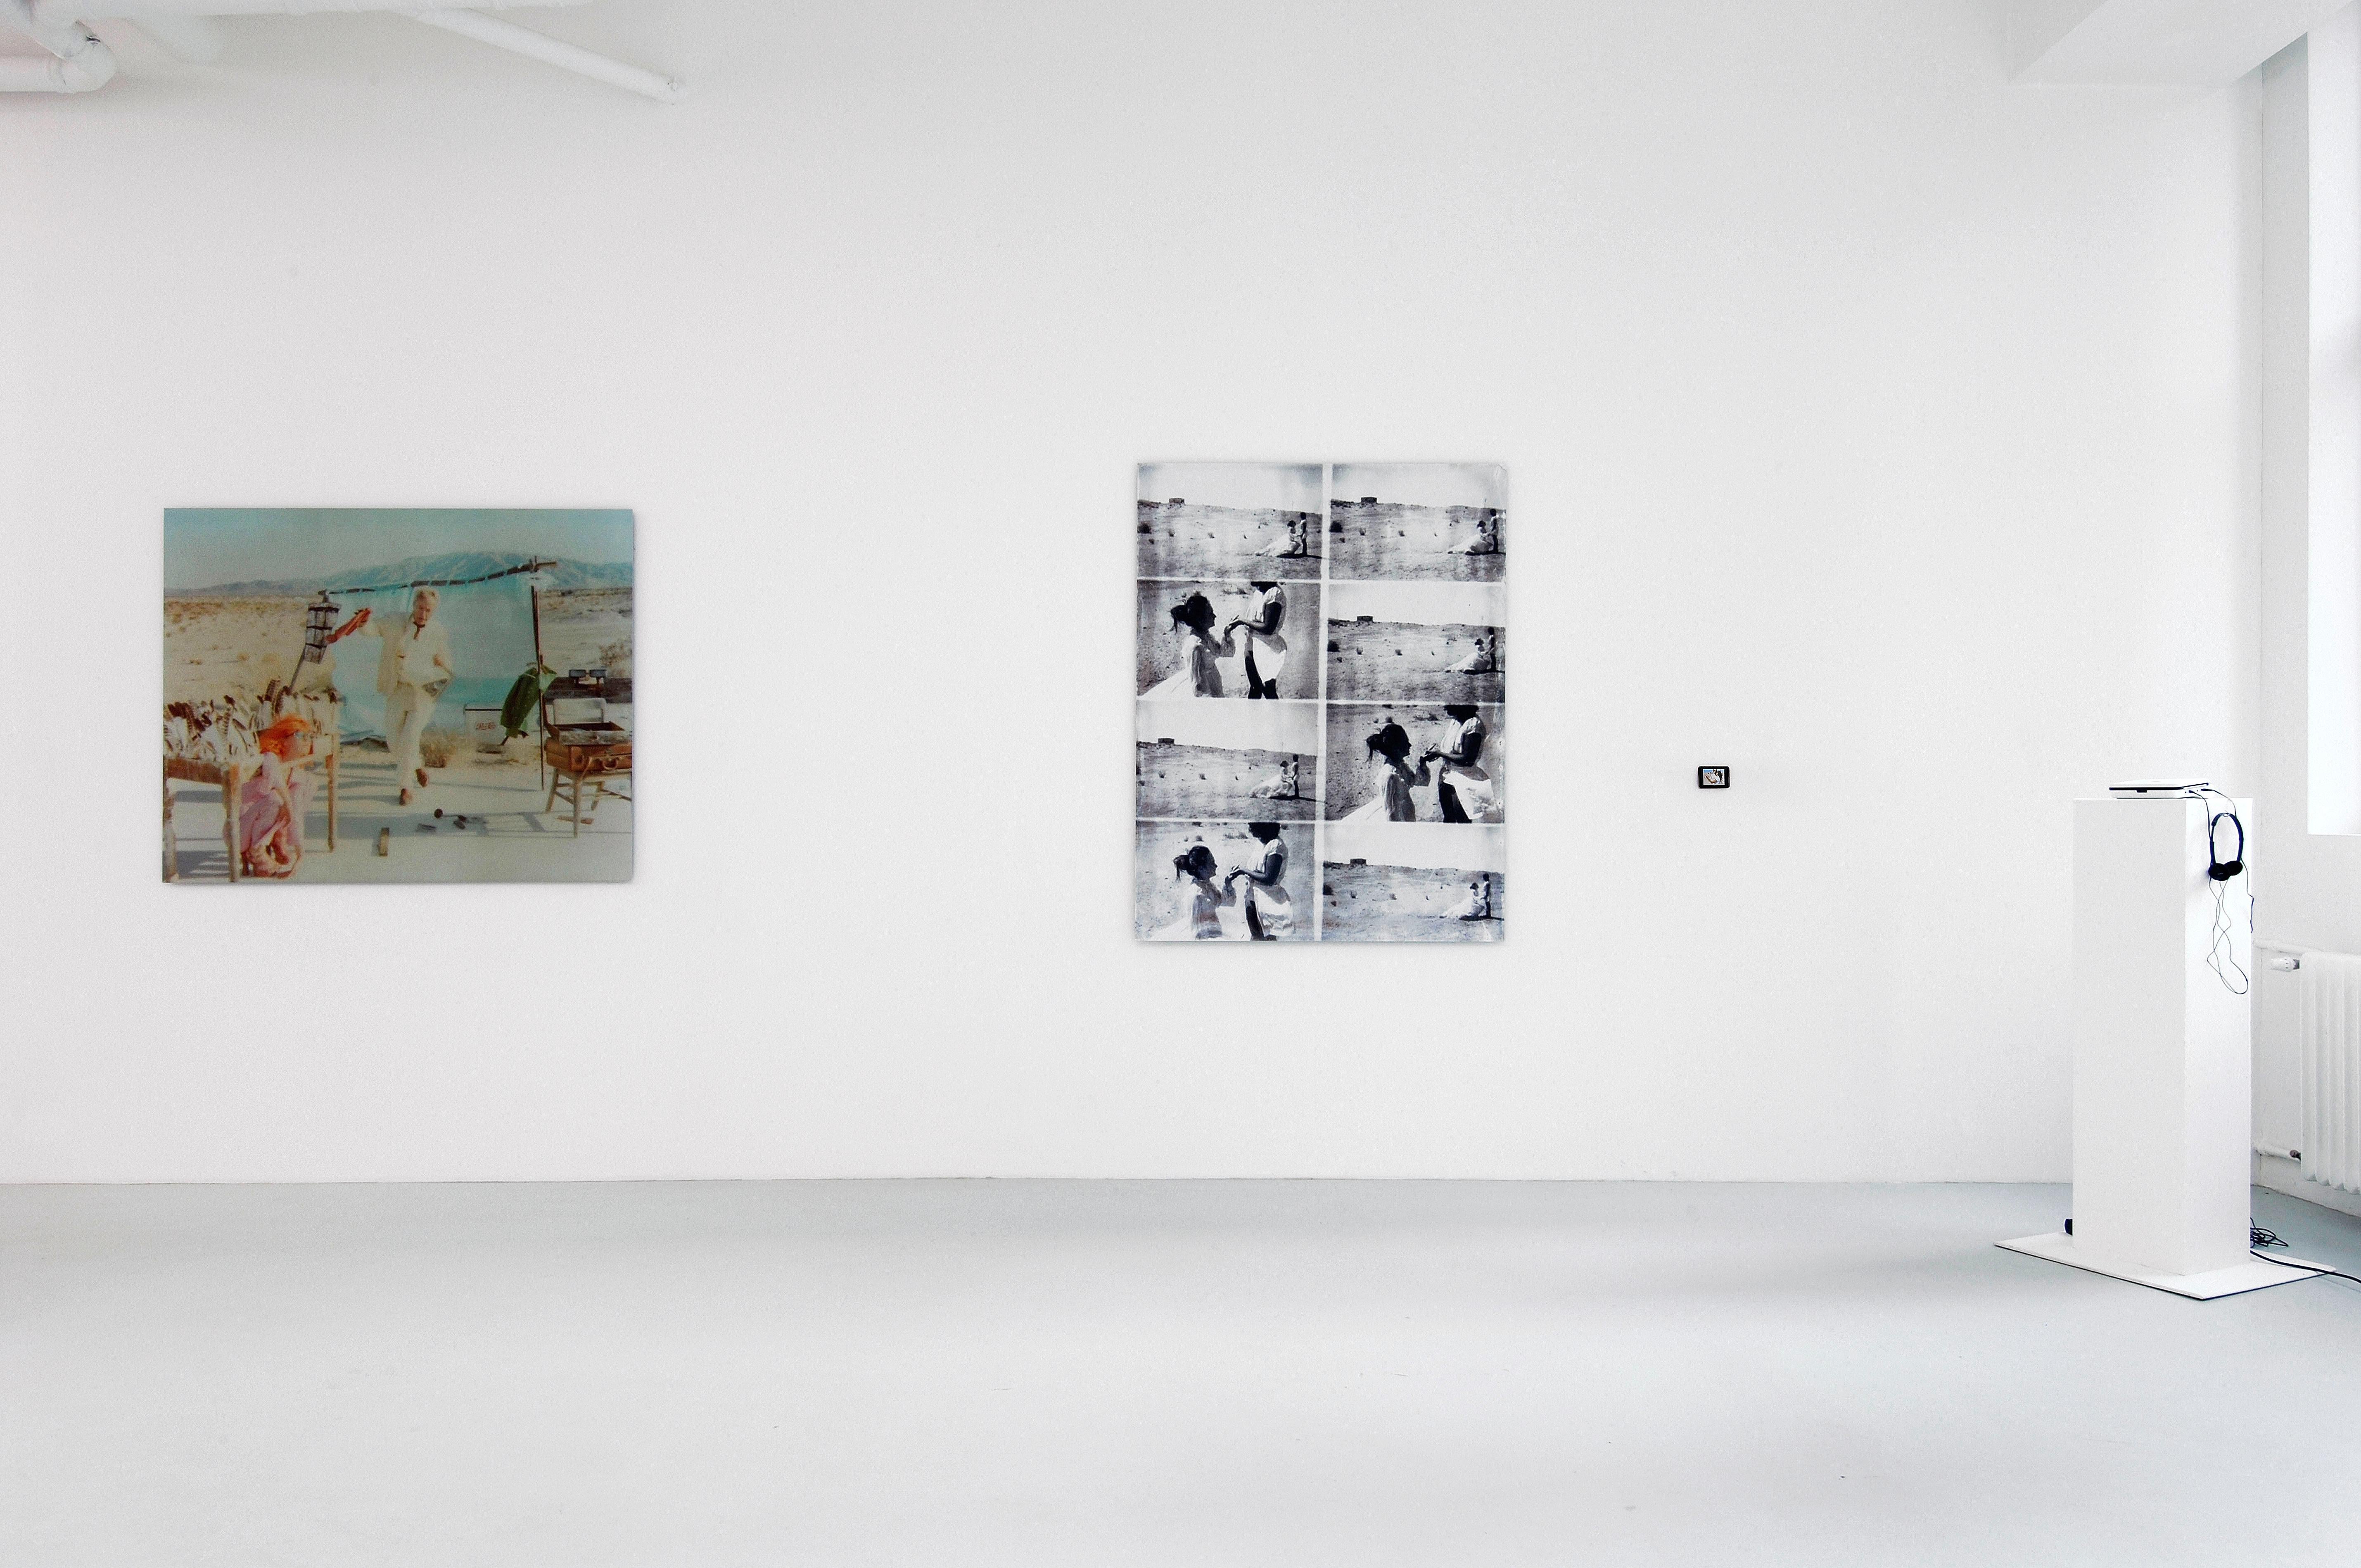 Spiegelbild (Stage of Consciosness), analog, 125x154cm - featuring Udo Kier - Photograph by Stefanie Schneider